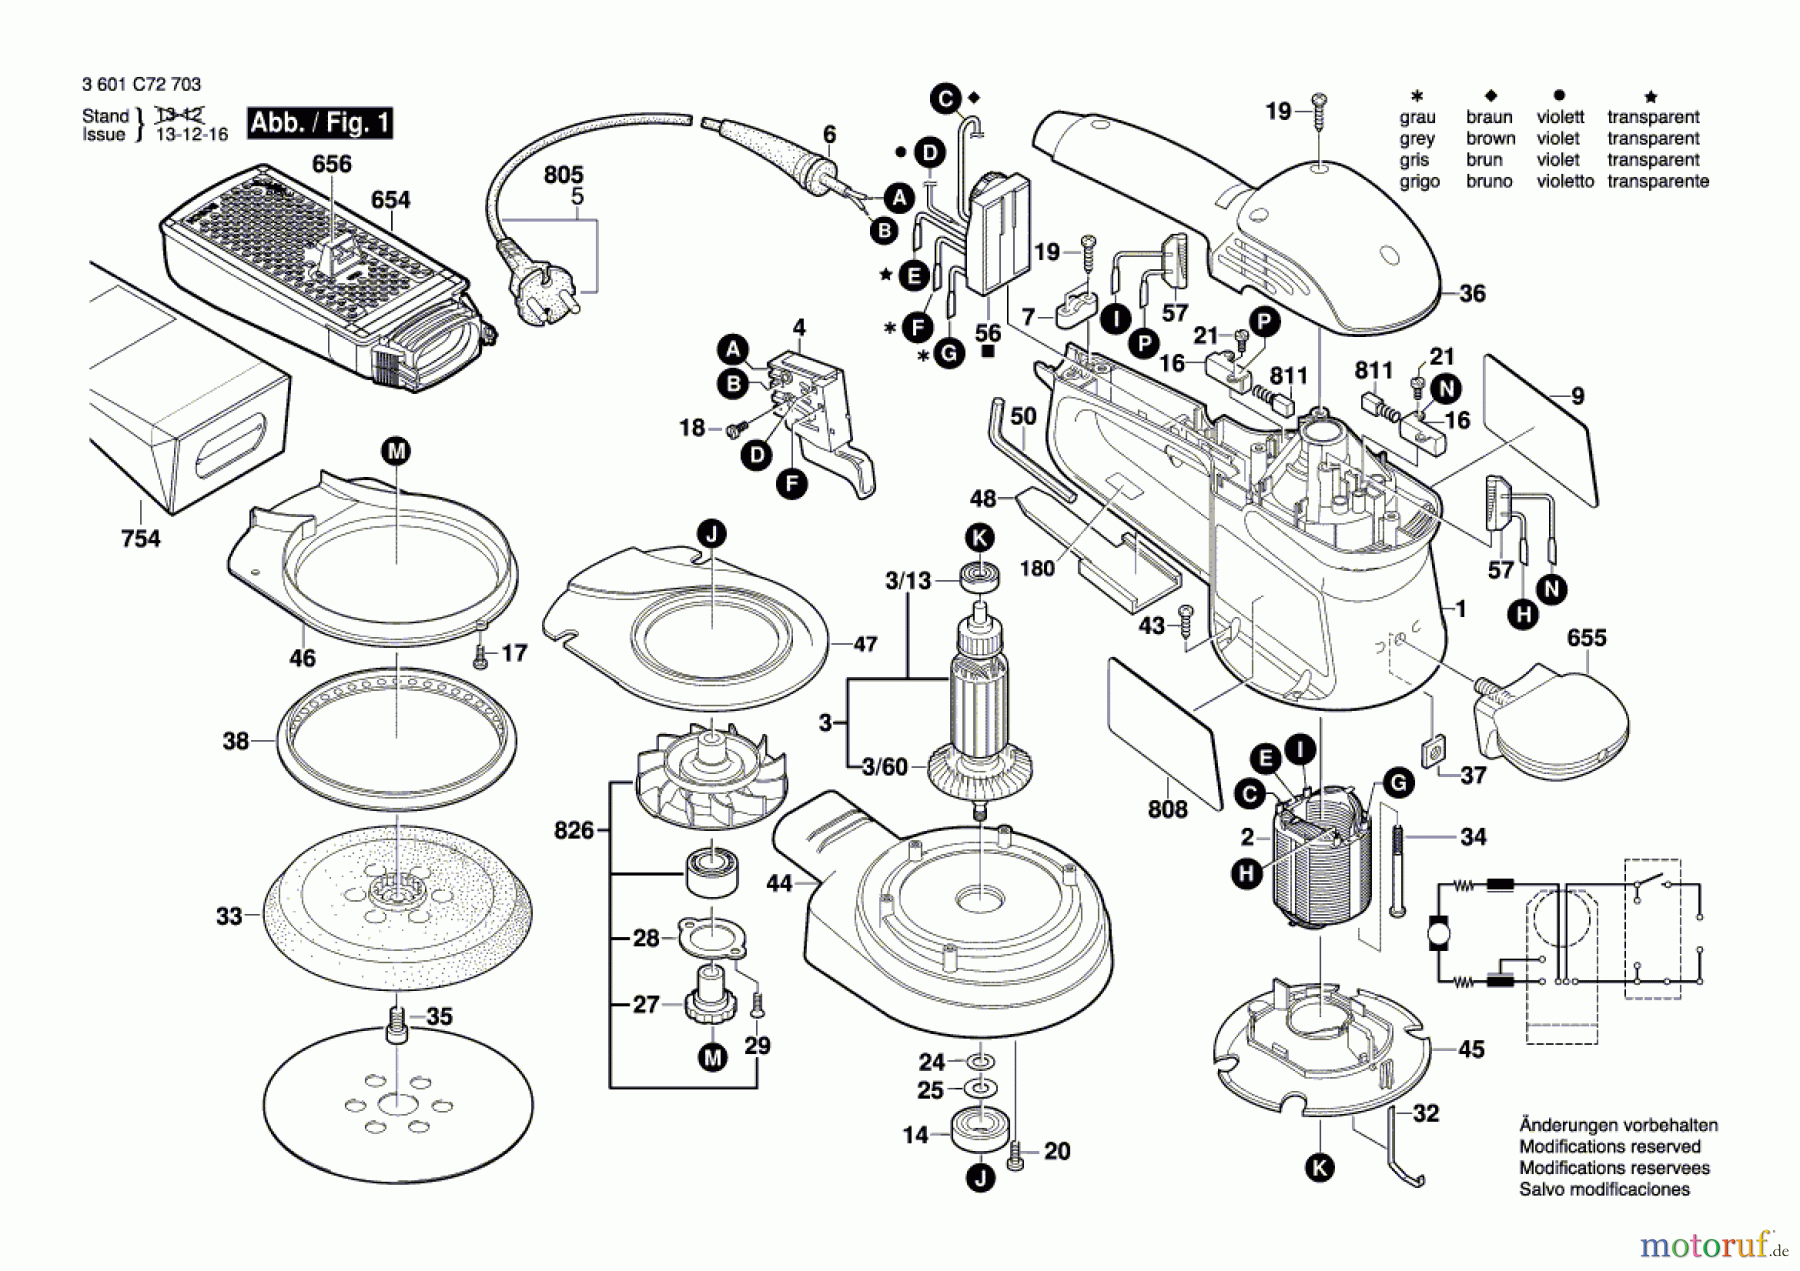  Bosch Werkzeug Exzenterschleifer GEX 150 AC Seite 1